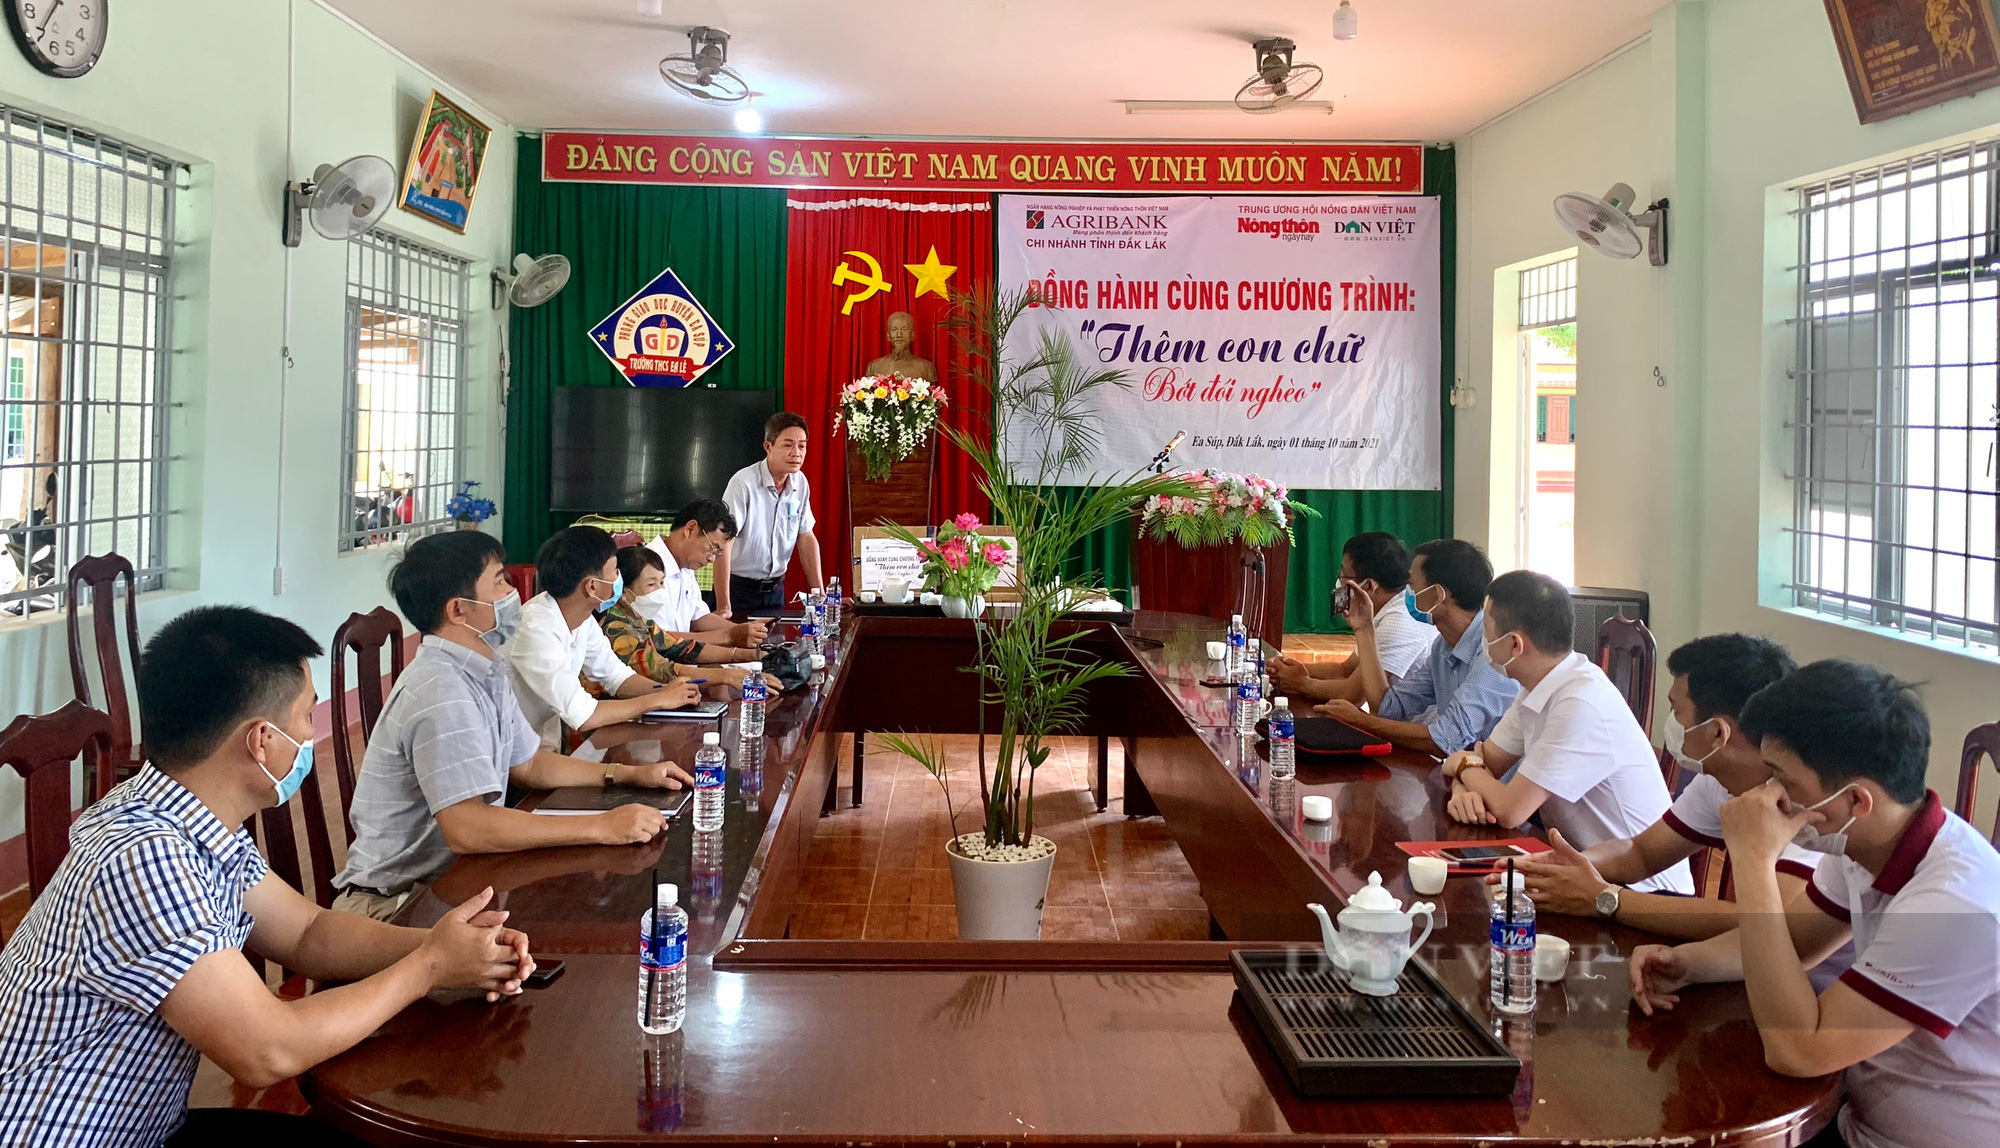 Báo Dân Việt cùng Agribank Đắk Lắk với chương trình “Thêm con chữ, bớt đói nghèo” - Ảnh 5.